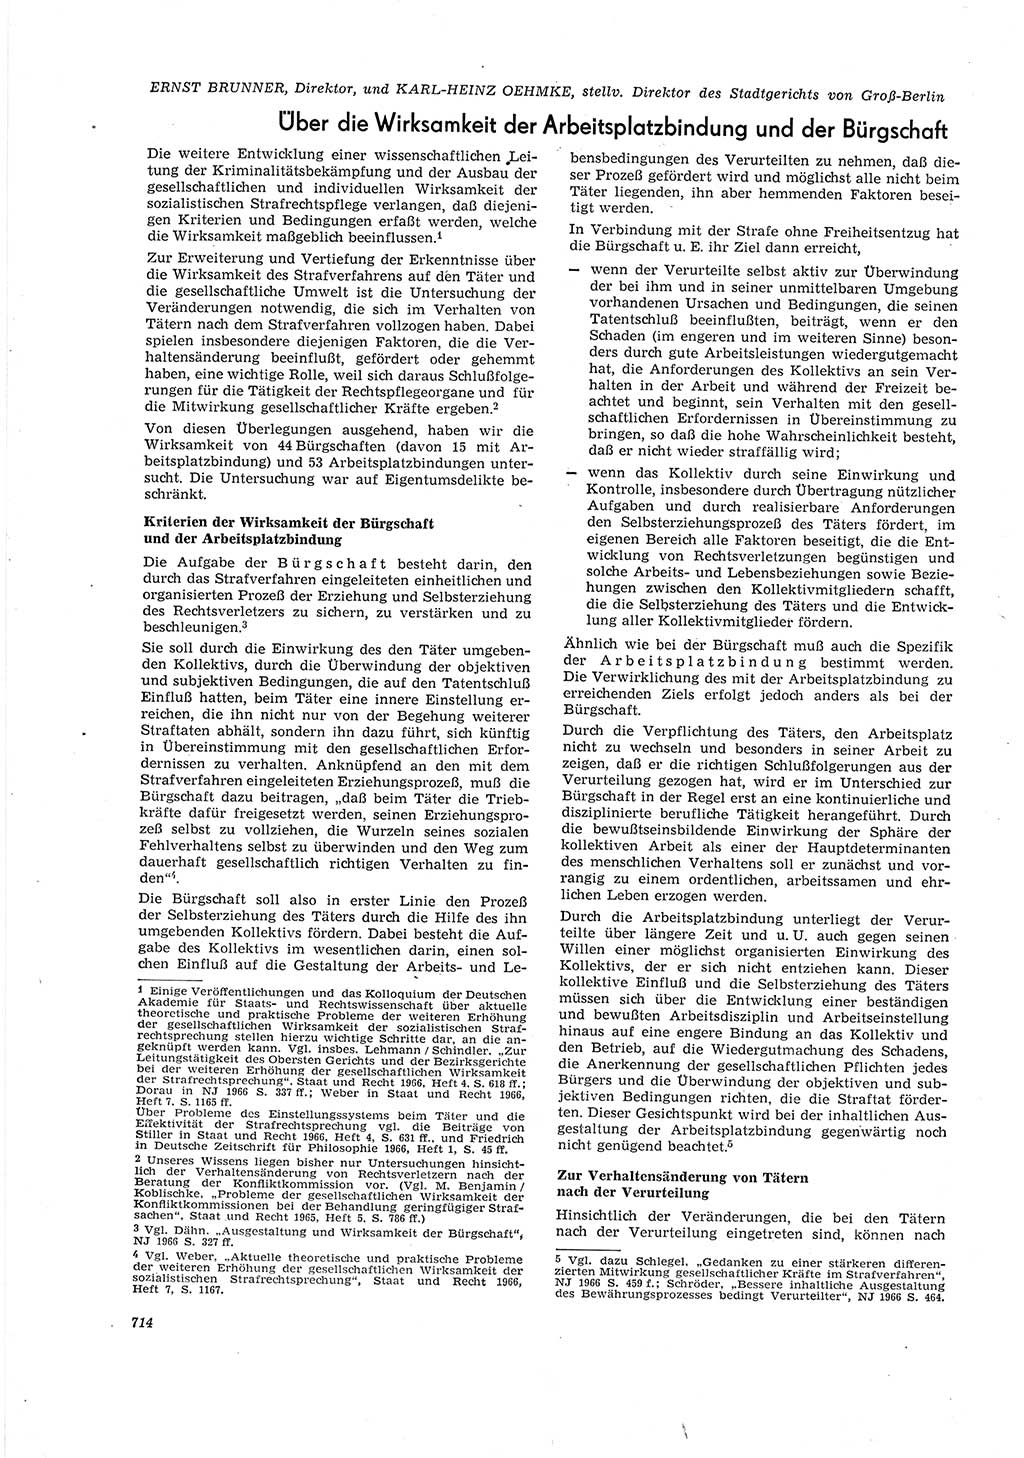 Neue Justiz (NJ), Zeitschrift für Recht und Rechtswissenschaft [Deutsche Demokratische Republik (DDR)], 20. Jahrgang 1966, Seite 714 (NJ DDR 1966, S. 714)